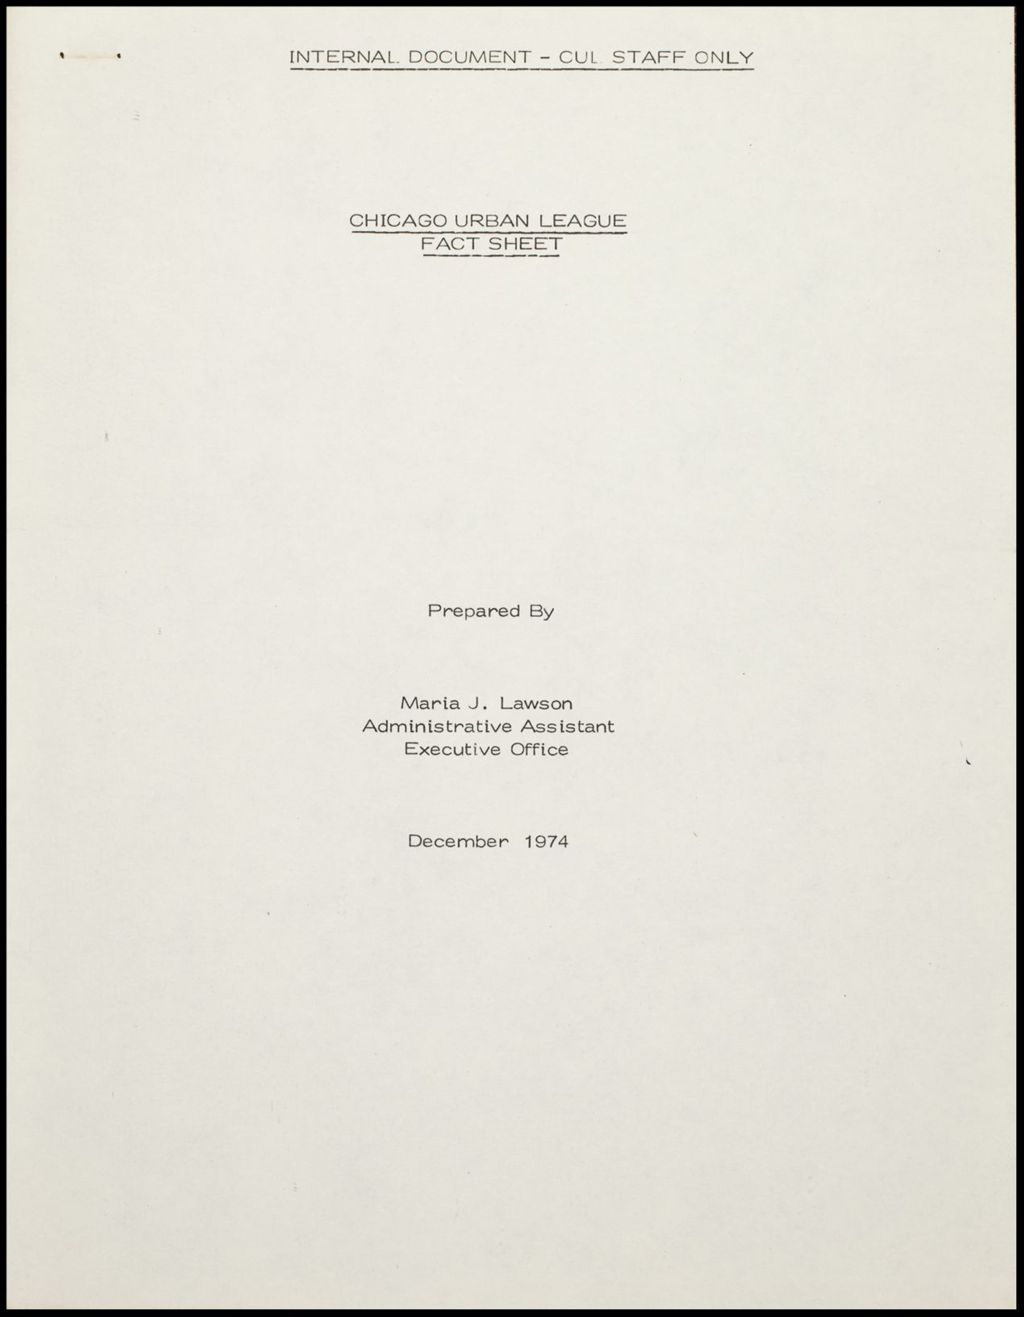 CUL Fact Sheet, 1974 (Folder IV-721)